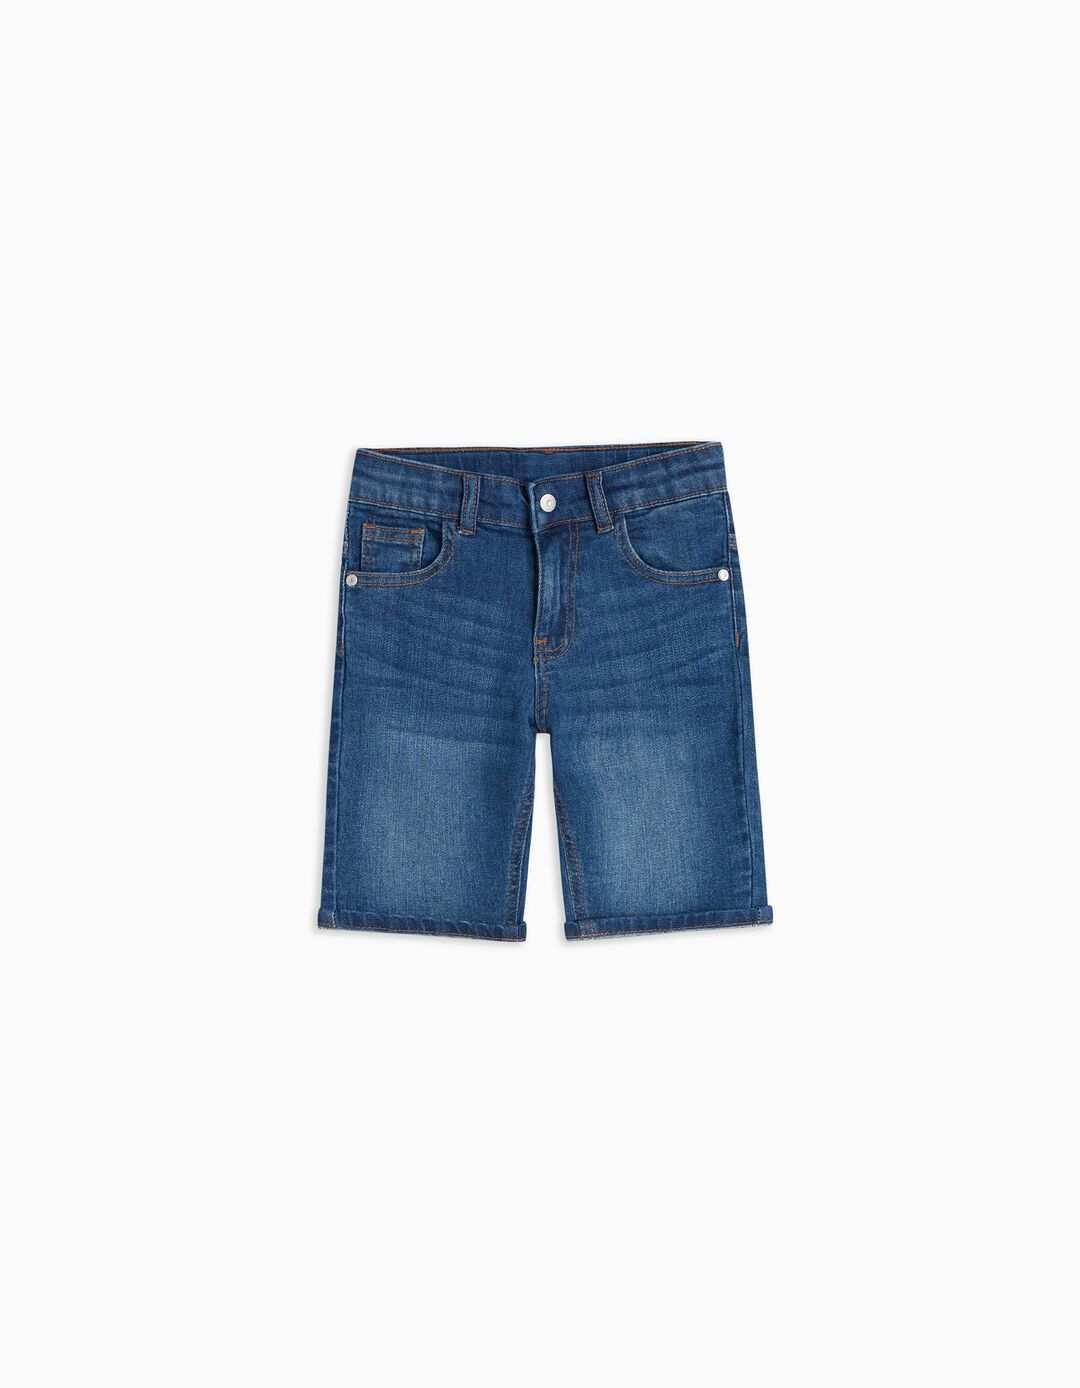 Denim Shorts, Boys, Blue